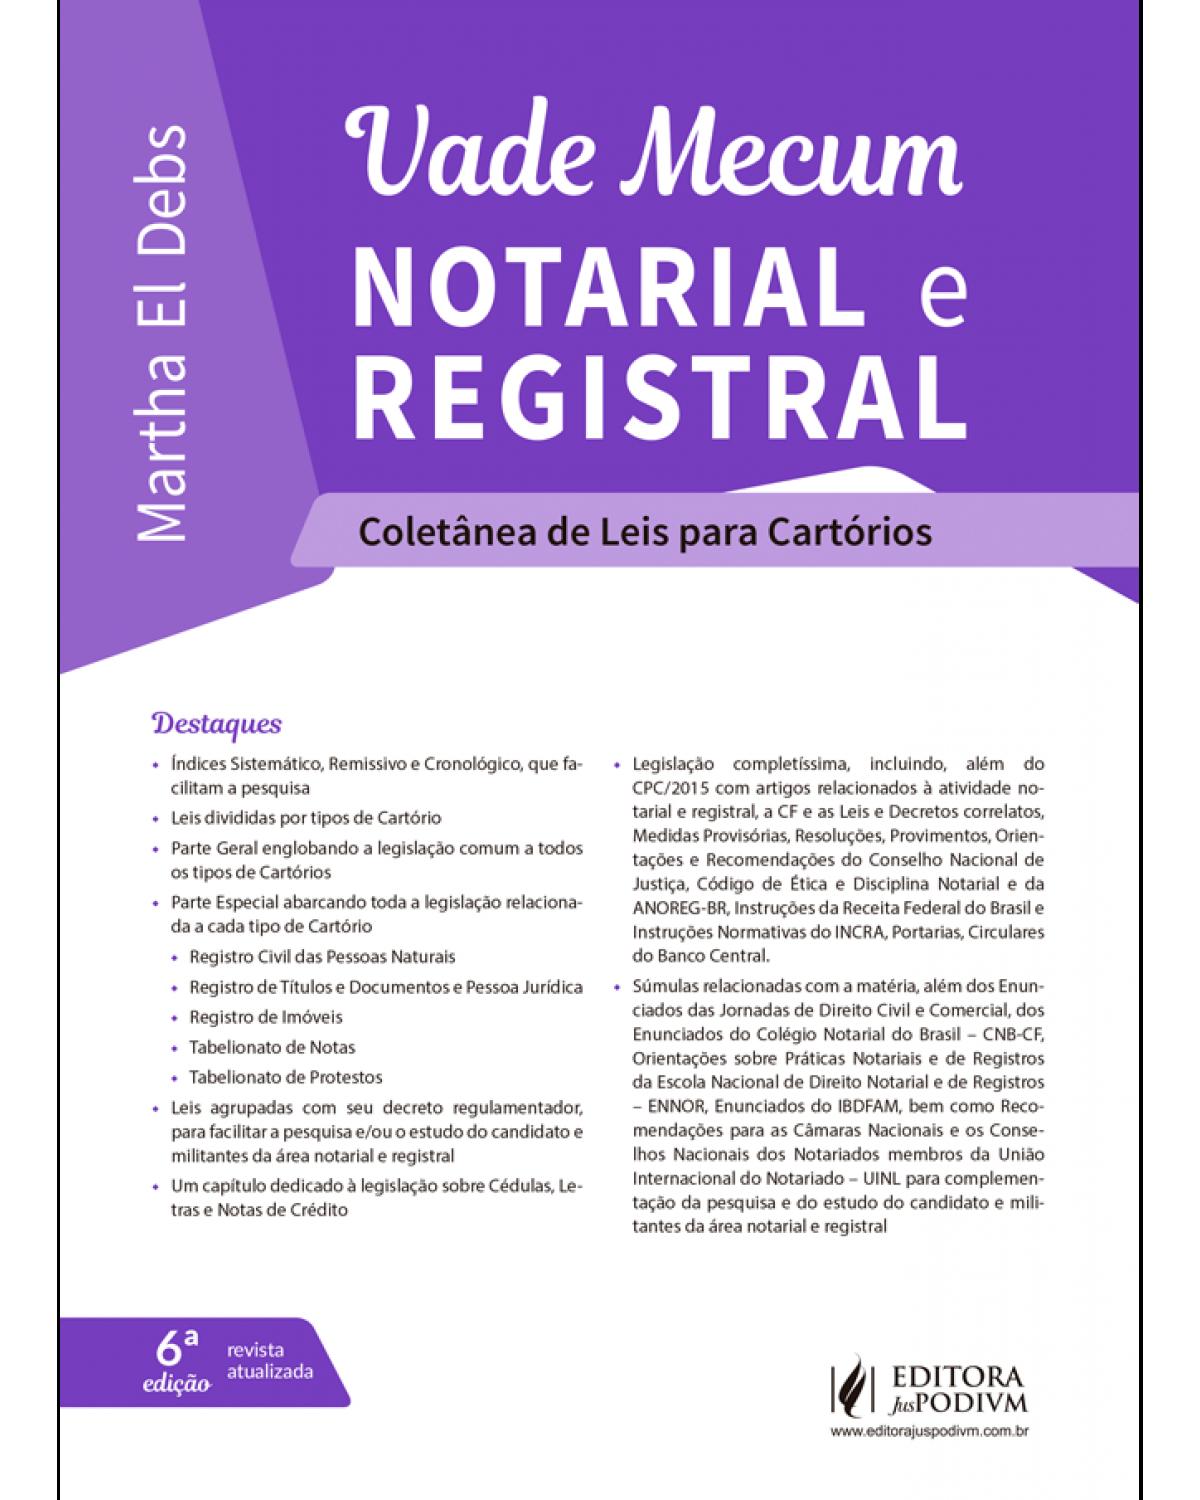 Vade mecum notarial e registral - coletânea de leis para cartórios - 6ª Edição | 2019